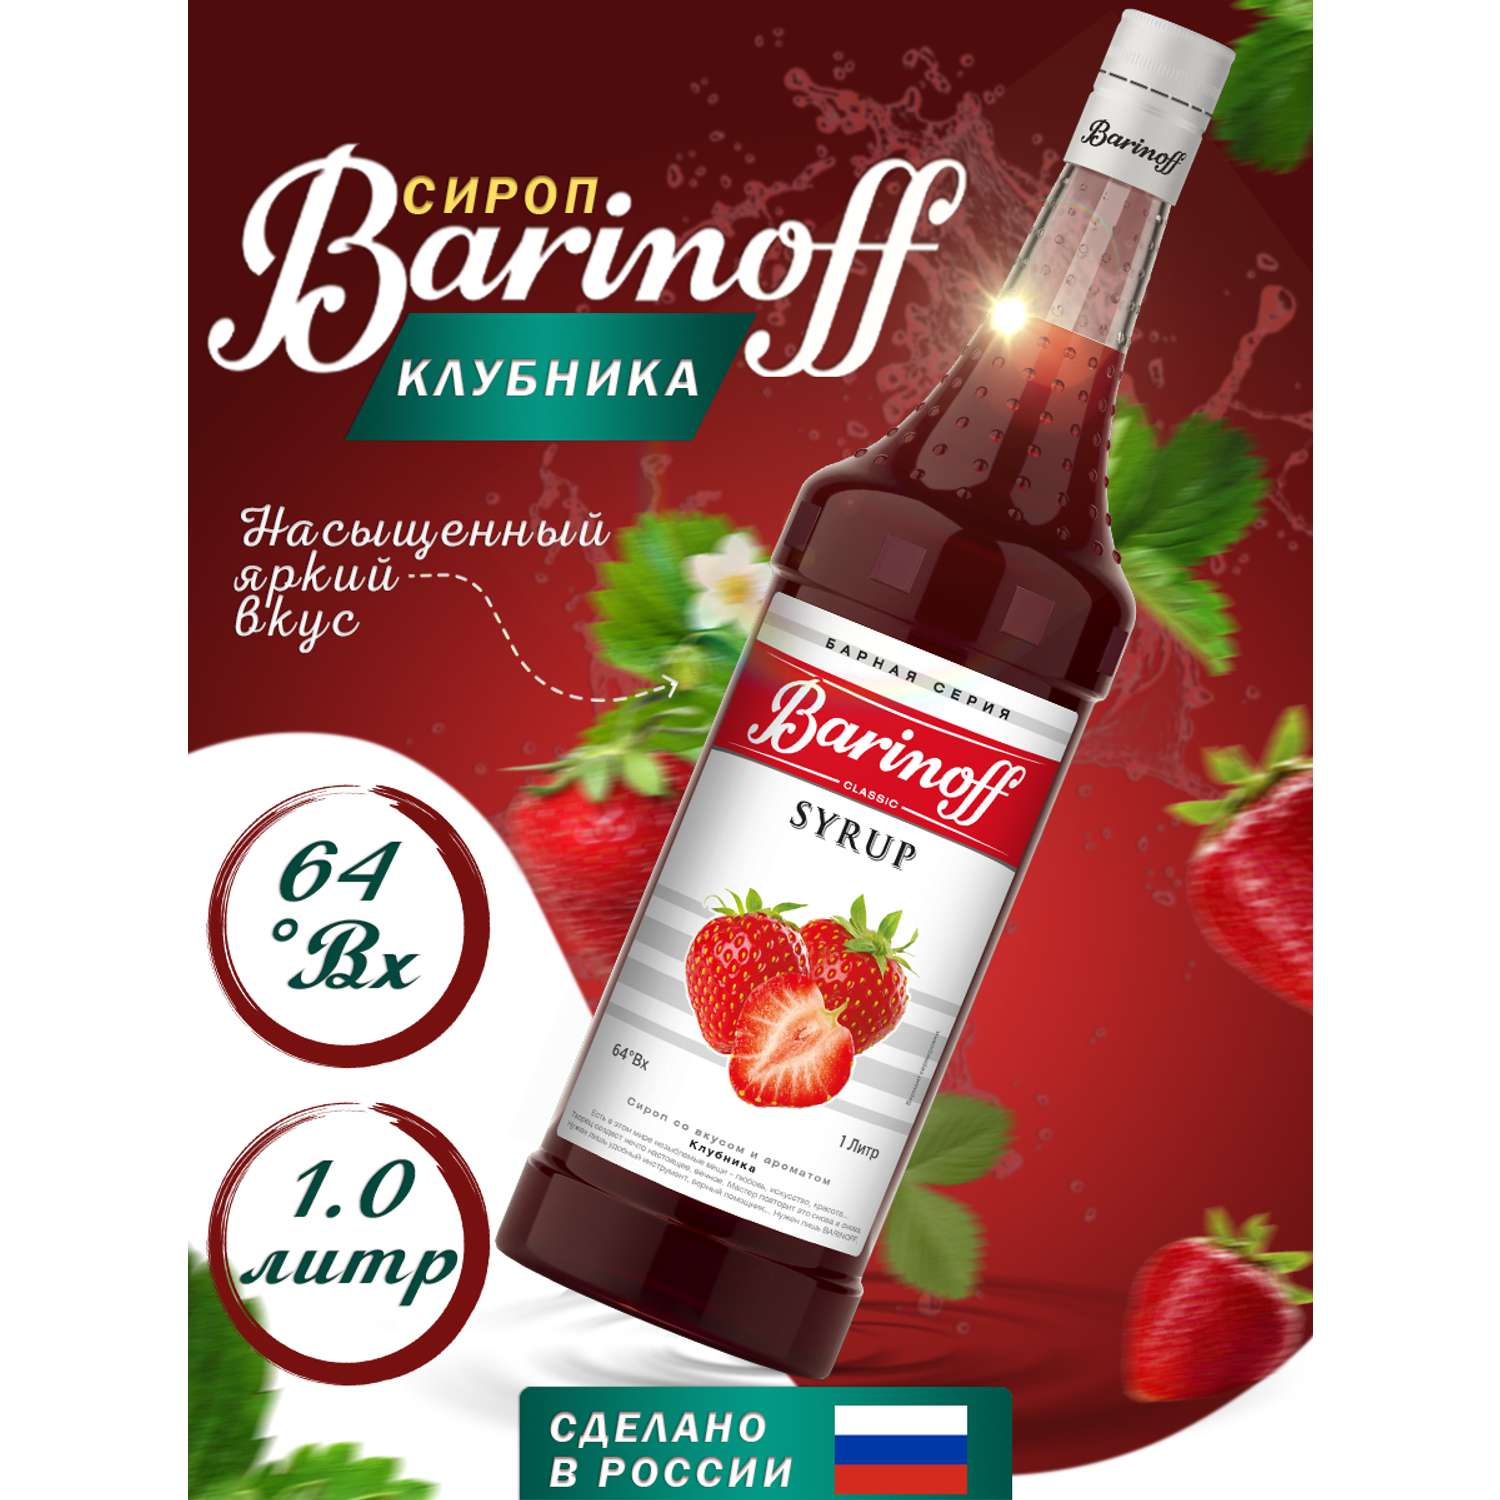 Сироп Barinoff Клубника для кофе и коктейлей 1л - фото 1